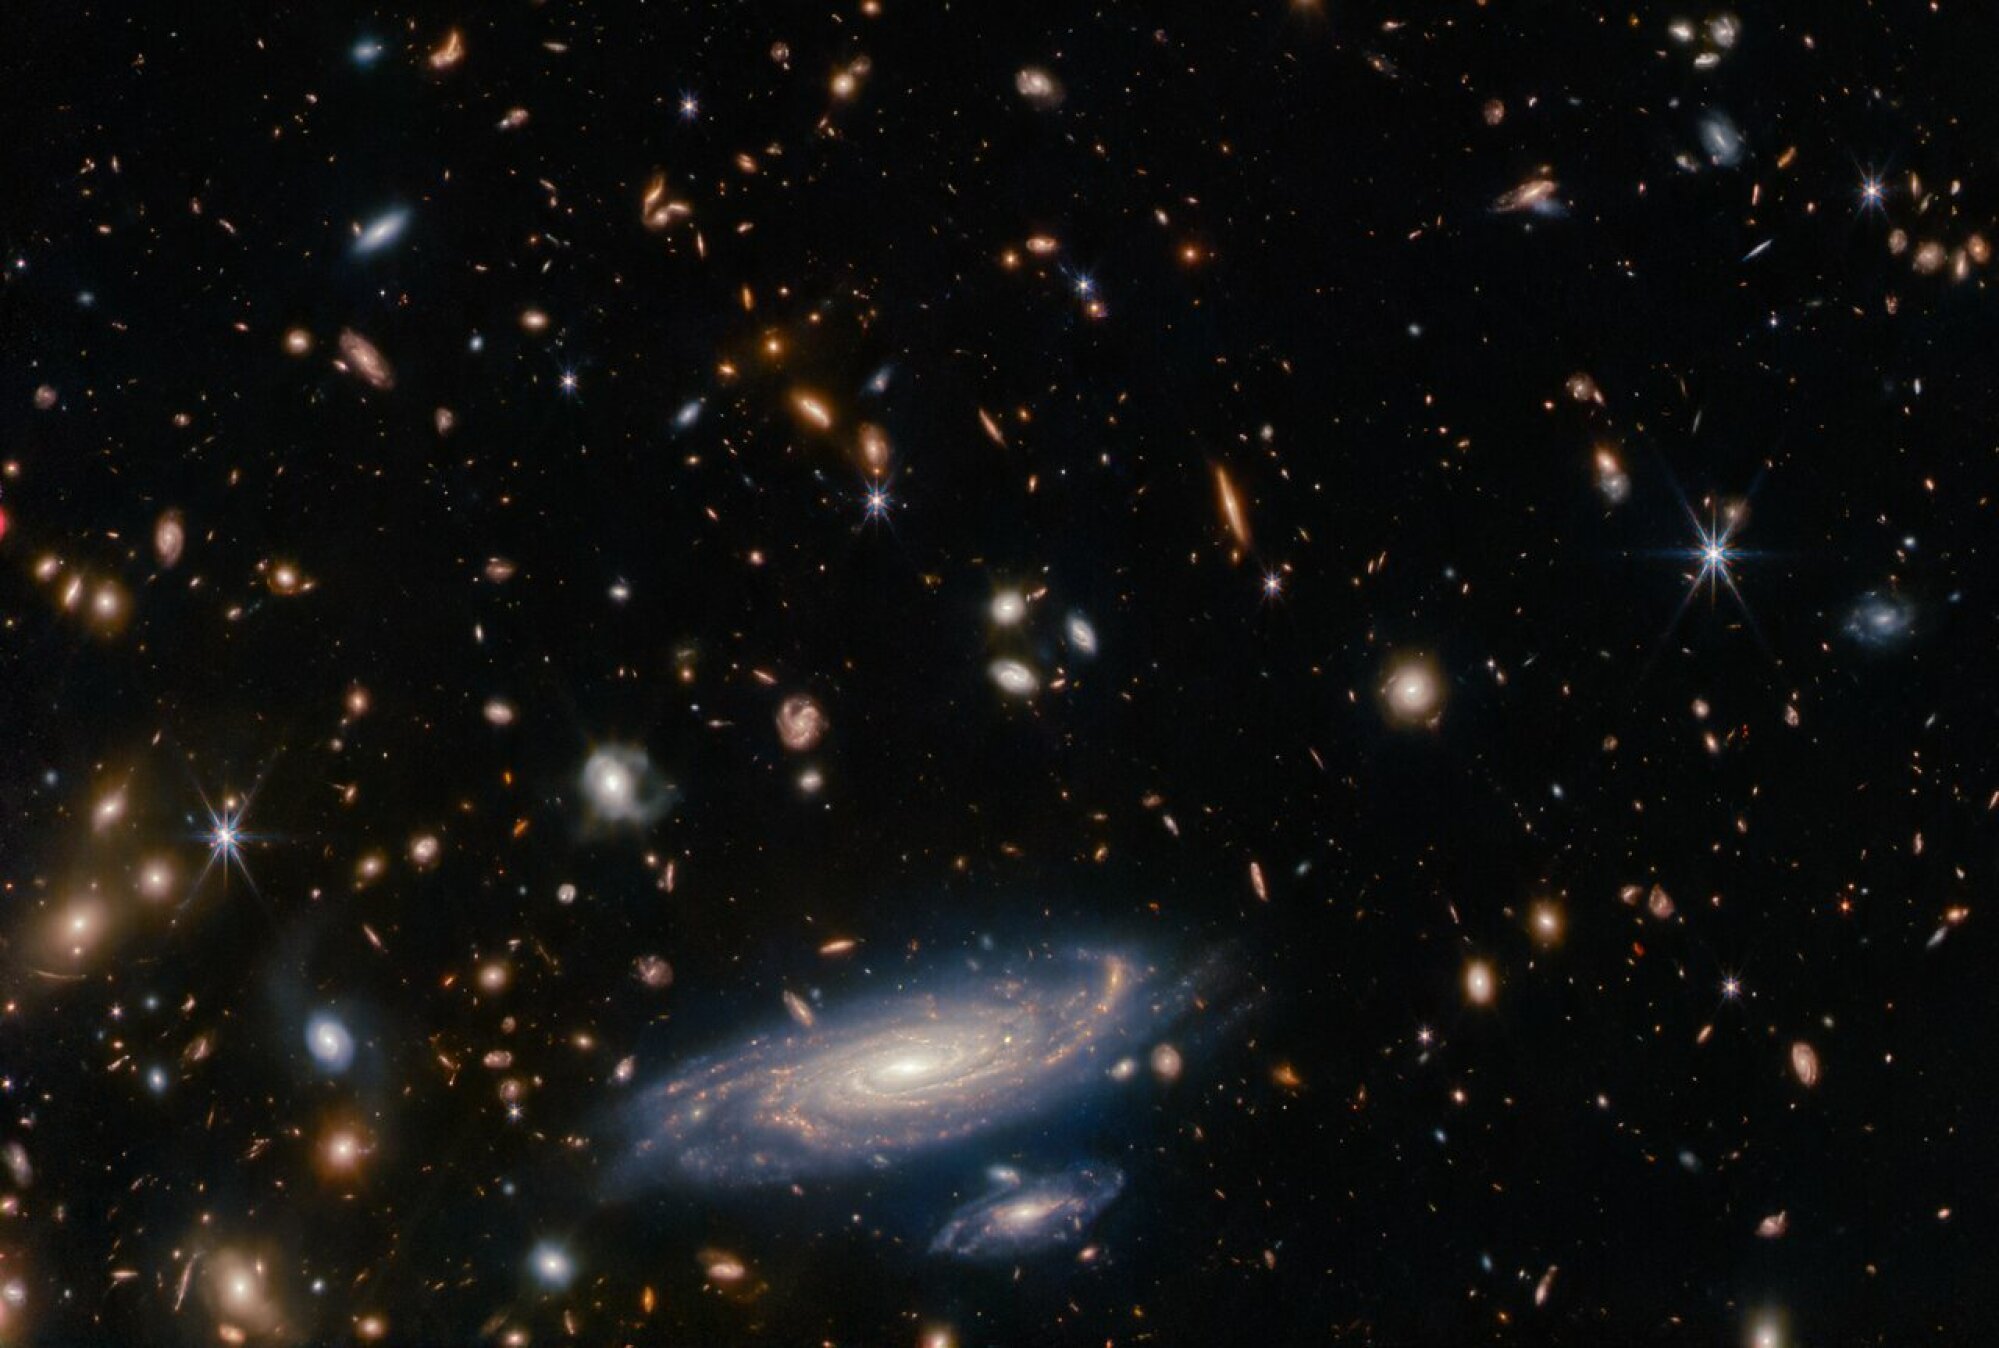 Une vue en profondeur du cosmos capturée par le télescope spatial James Webb. Chaque objet, à l'exception des étoiles à six branches au premier plan, constitue une galaxie entière.